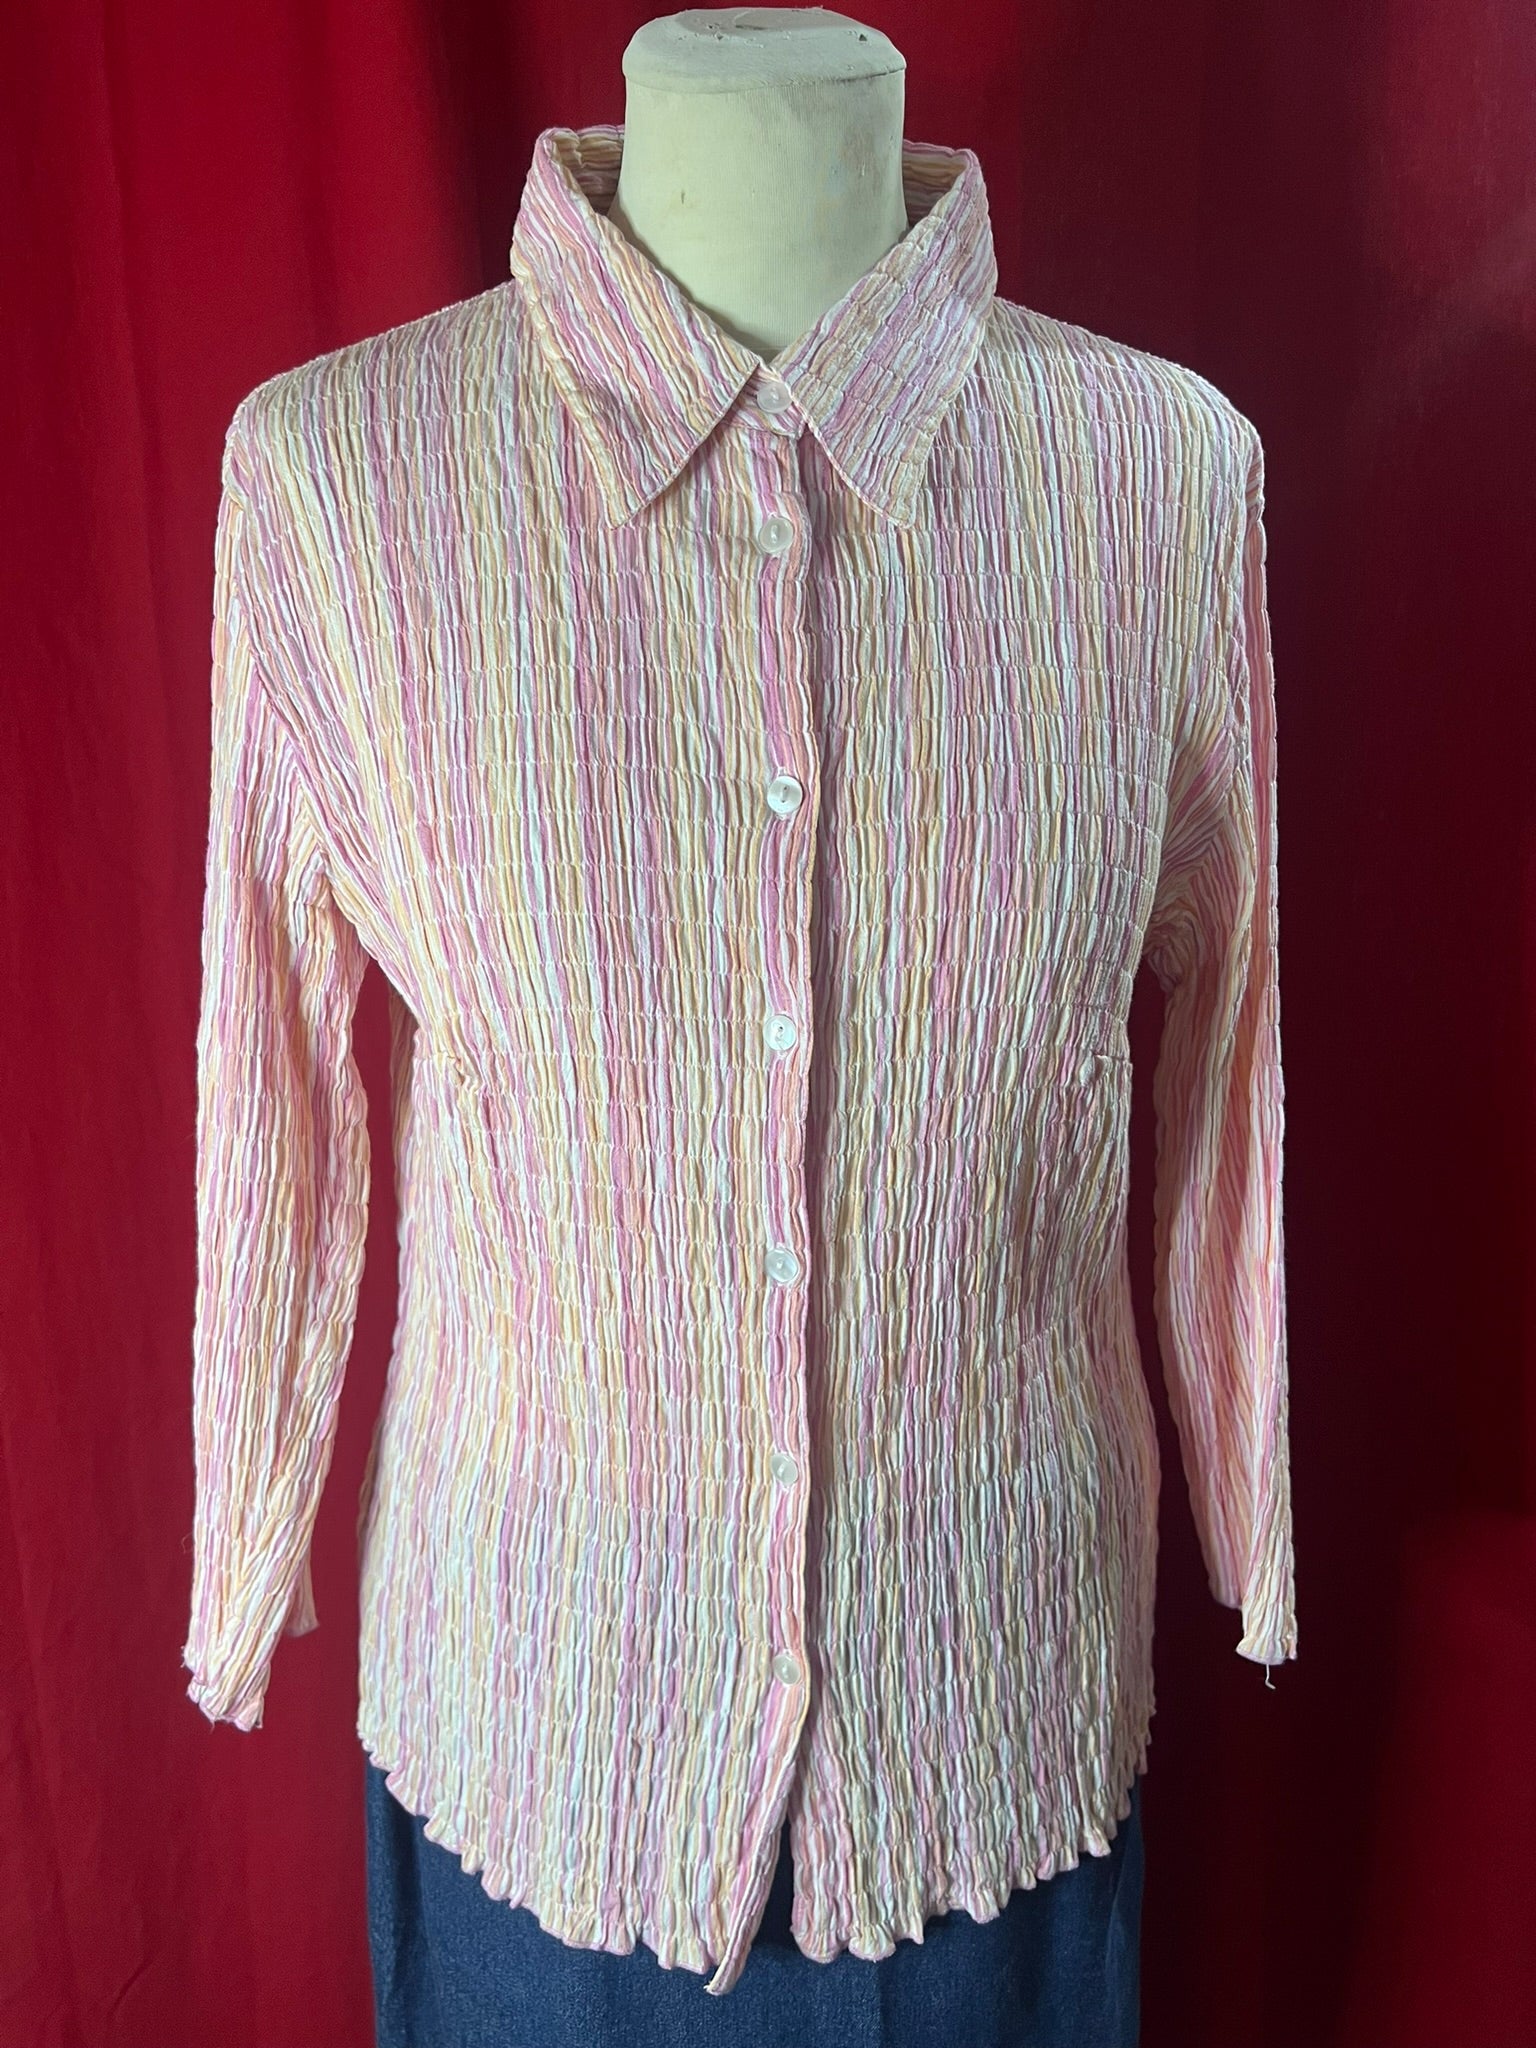 chemise plissée vintage, datant des années 2000, couleurs pastel